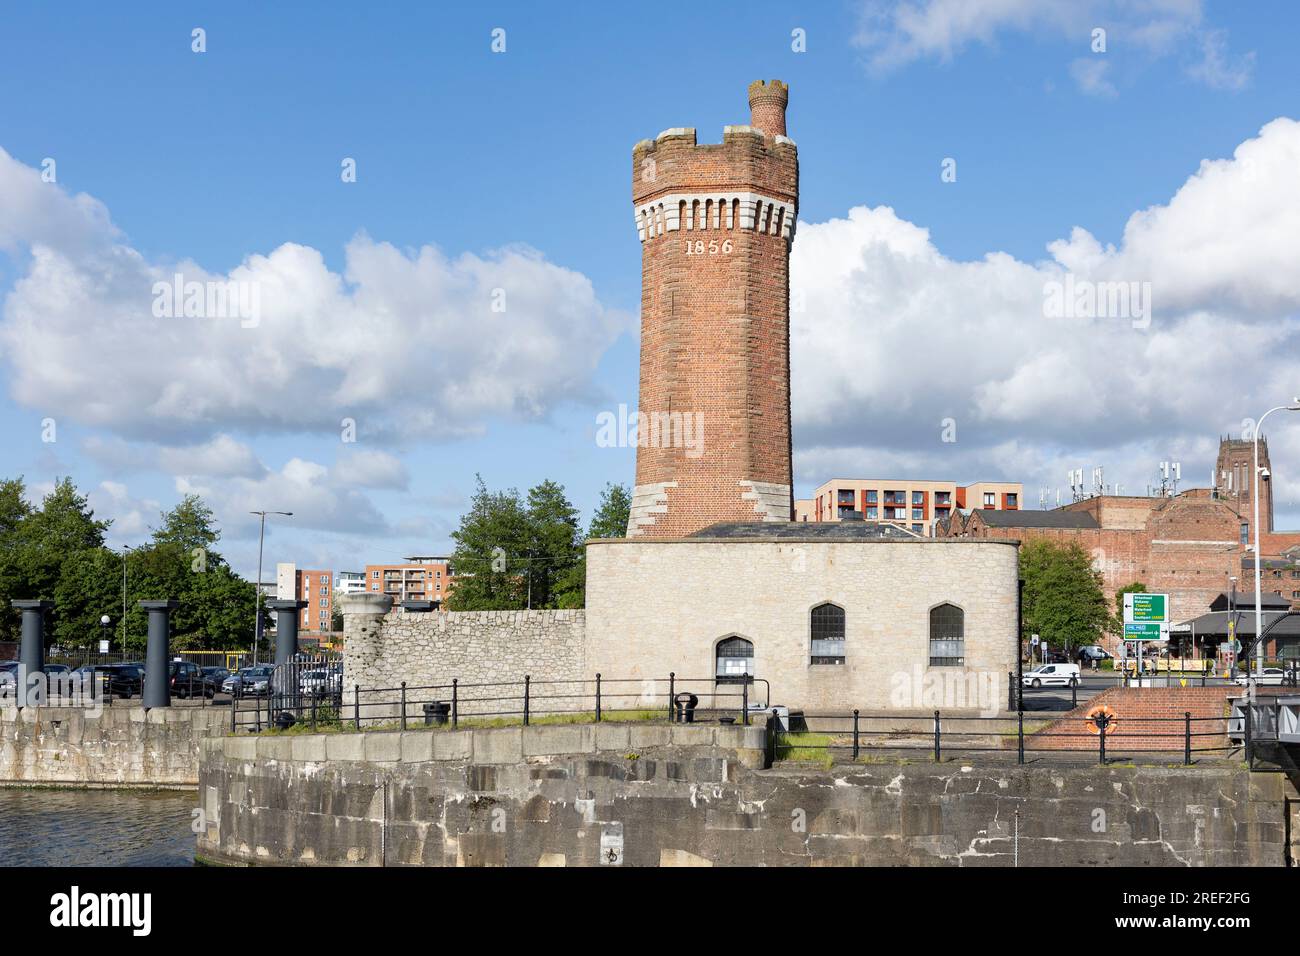 Torre idraulica in mattoni costruita nel 1856 a Wapping Dock, Liverpool, creata utilizzando strumenti generativi di intelligenza artificiale. Foto Stock